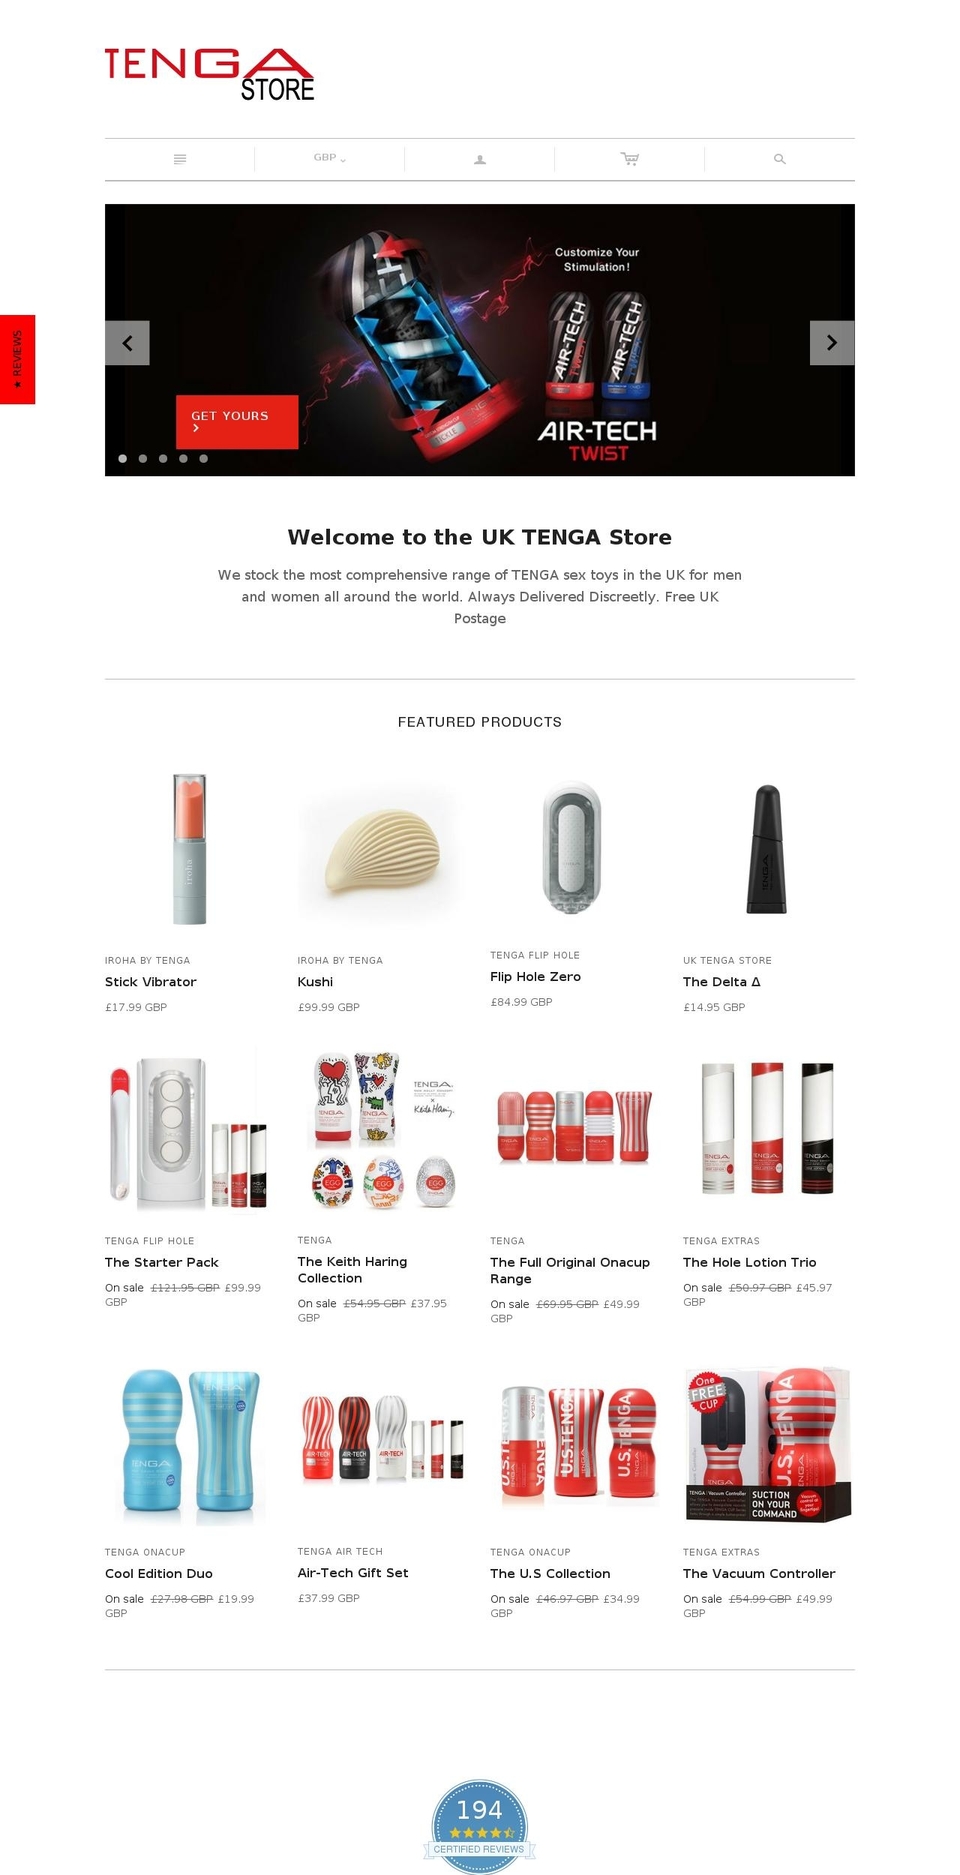 tenga.co.uk shopify website screenshot